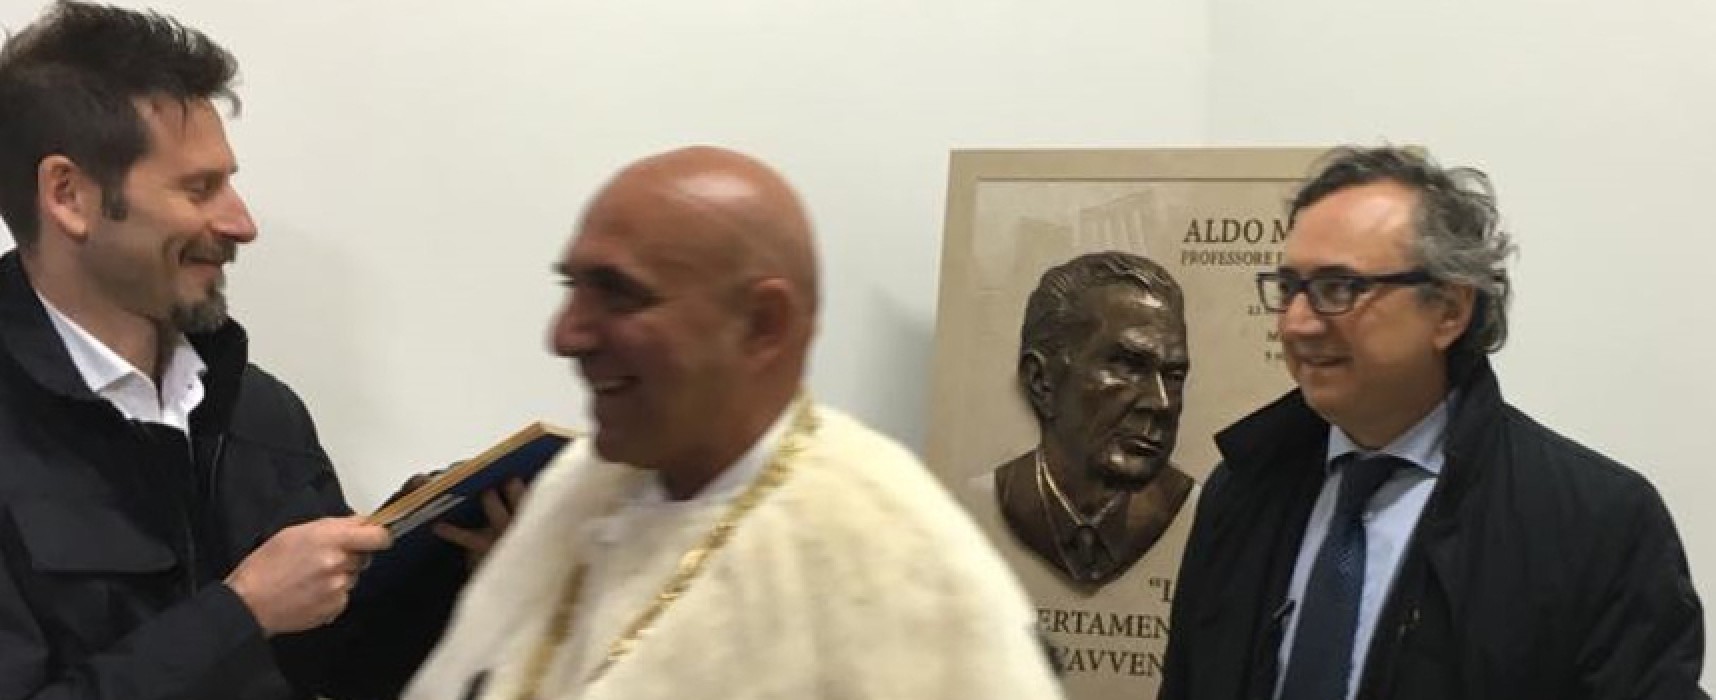 L’artista Domenico Velletri e la città di Bisceglie donano bassorilievo dedicato ad Aldo Moro all’Università di Bari